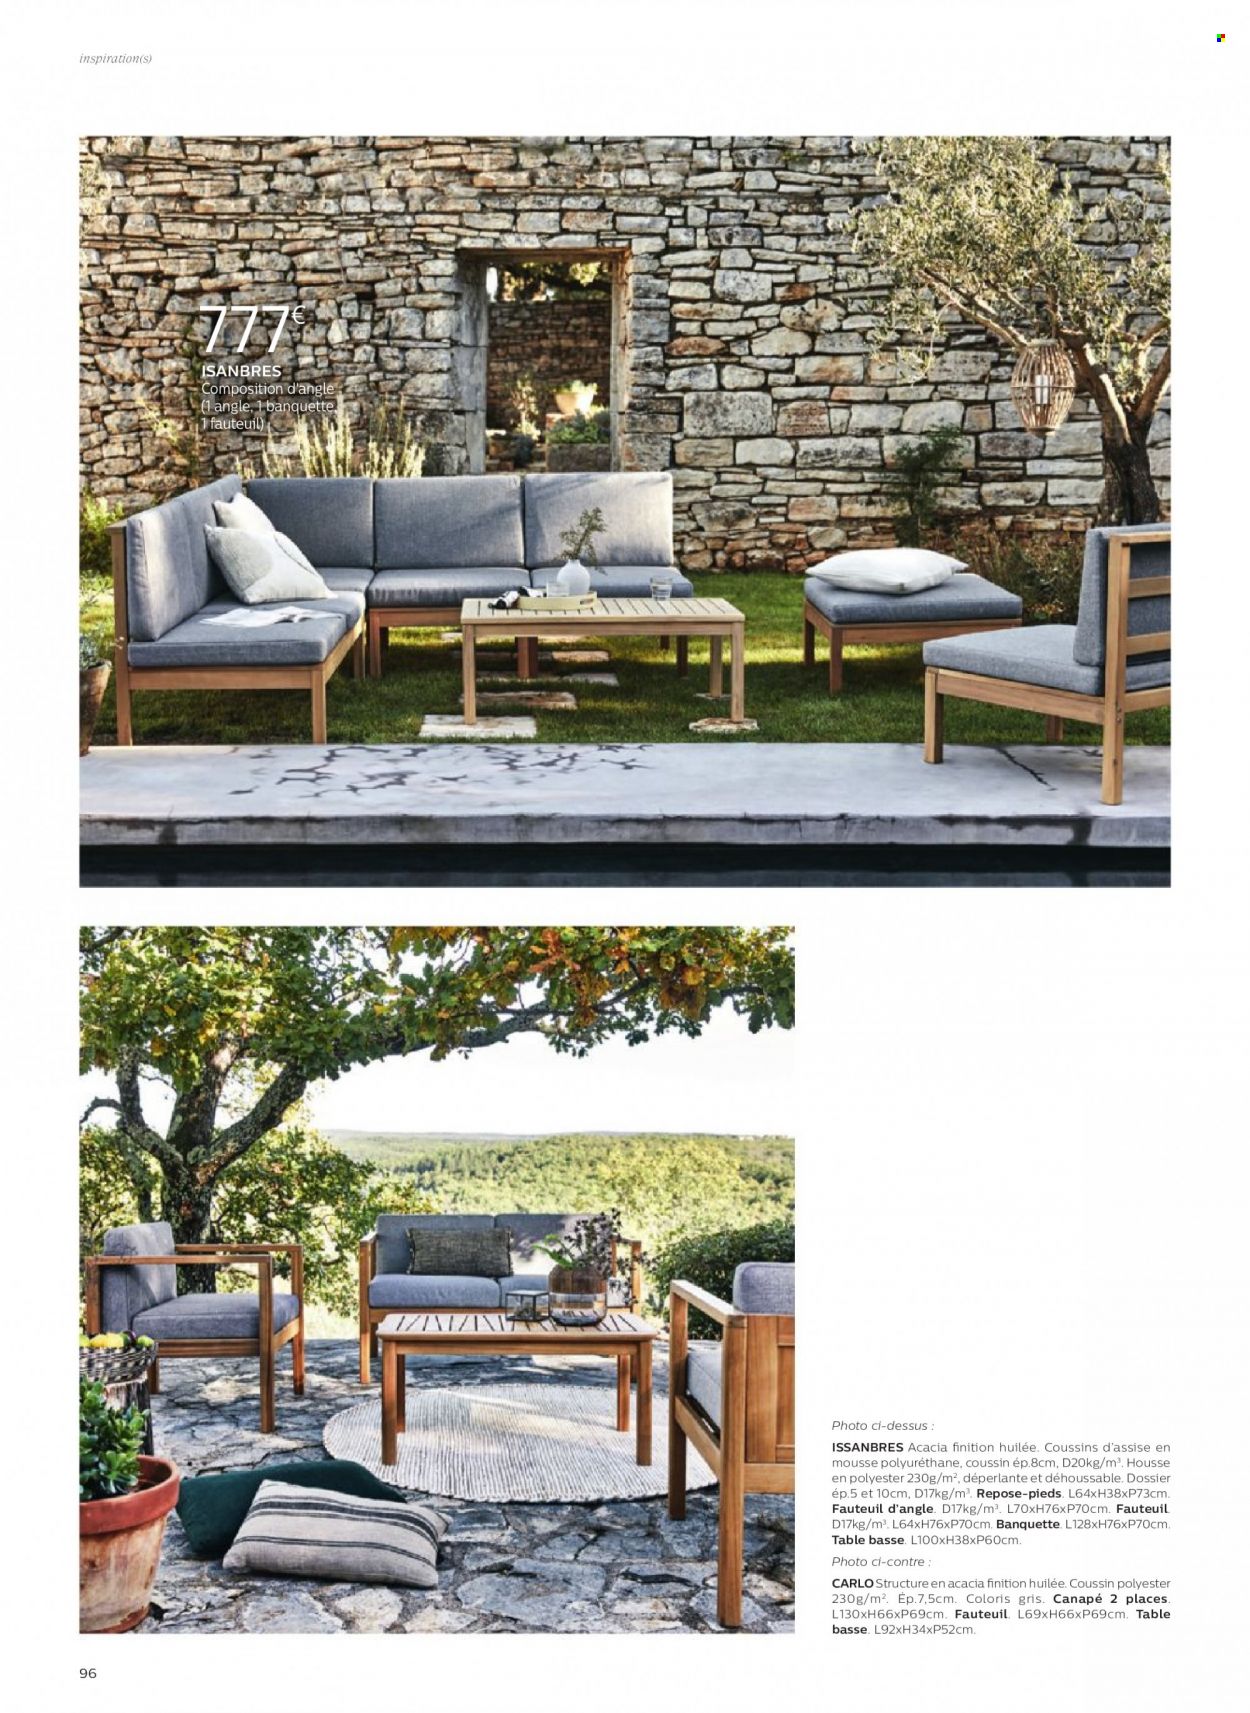 thumbnail - Catalogue alinea - Produits soldés - table, coussin, canapé, canapé 2 places, fauteuil, repose-pieds, table basse. Page 96.